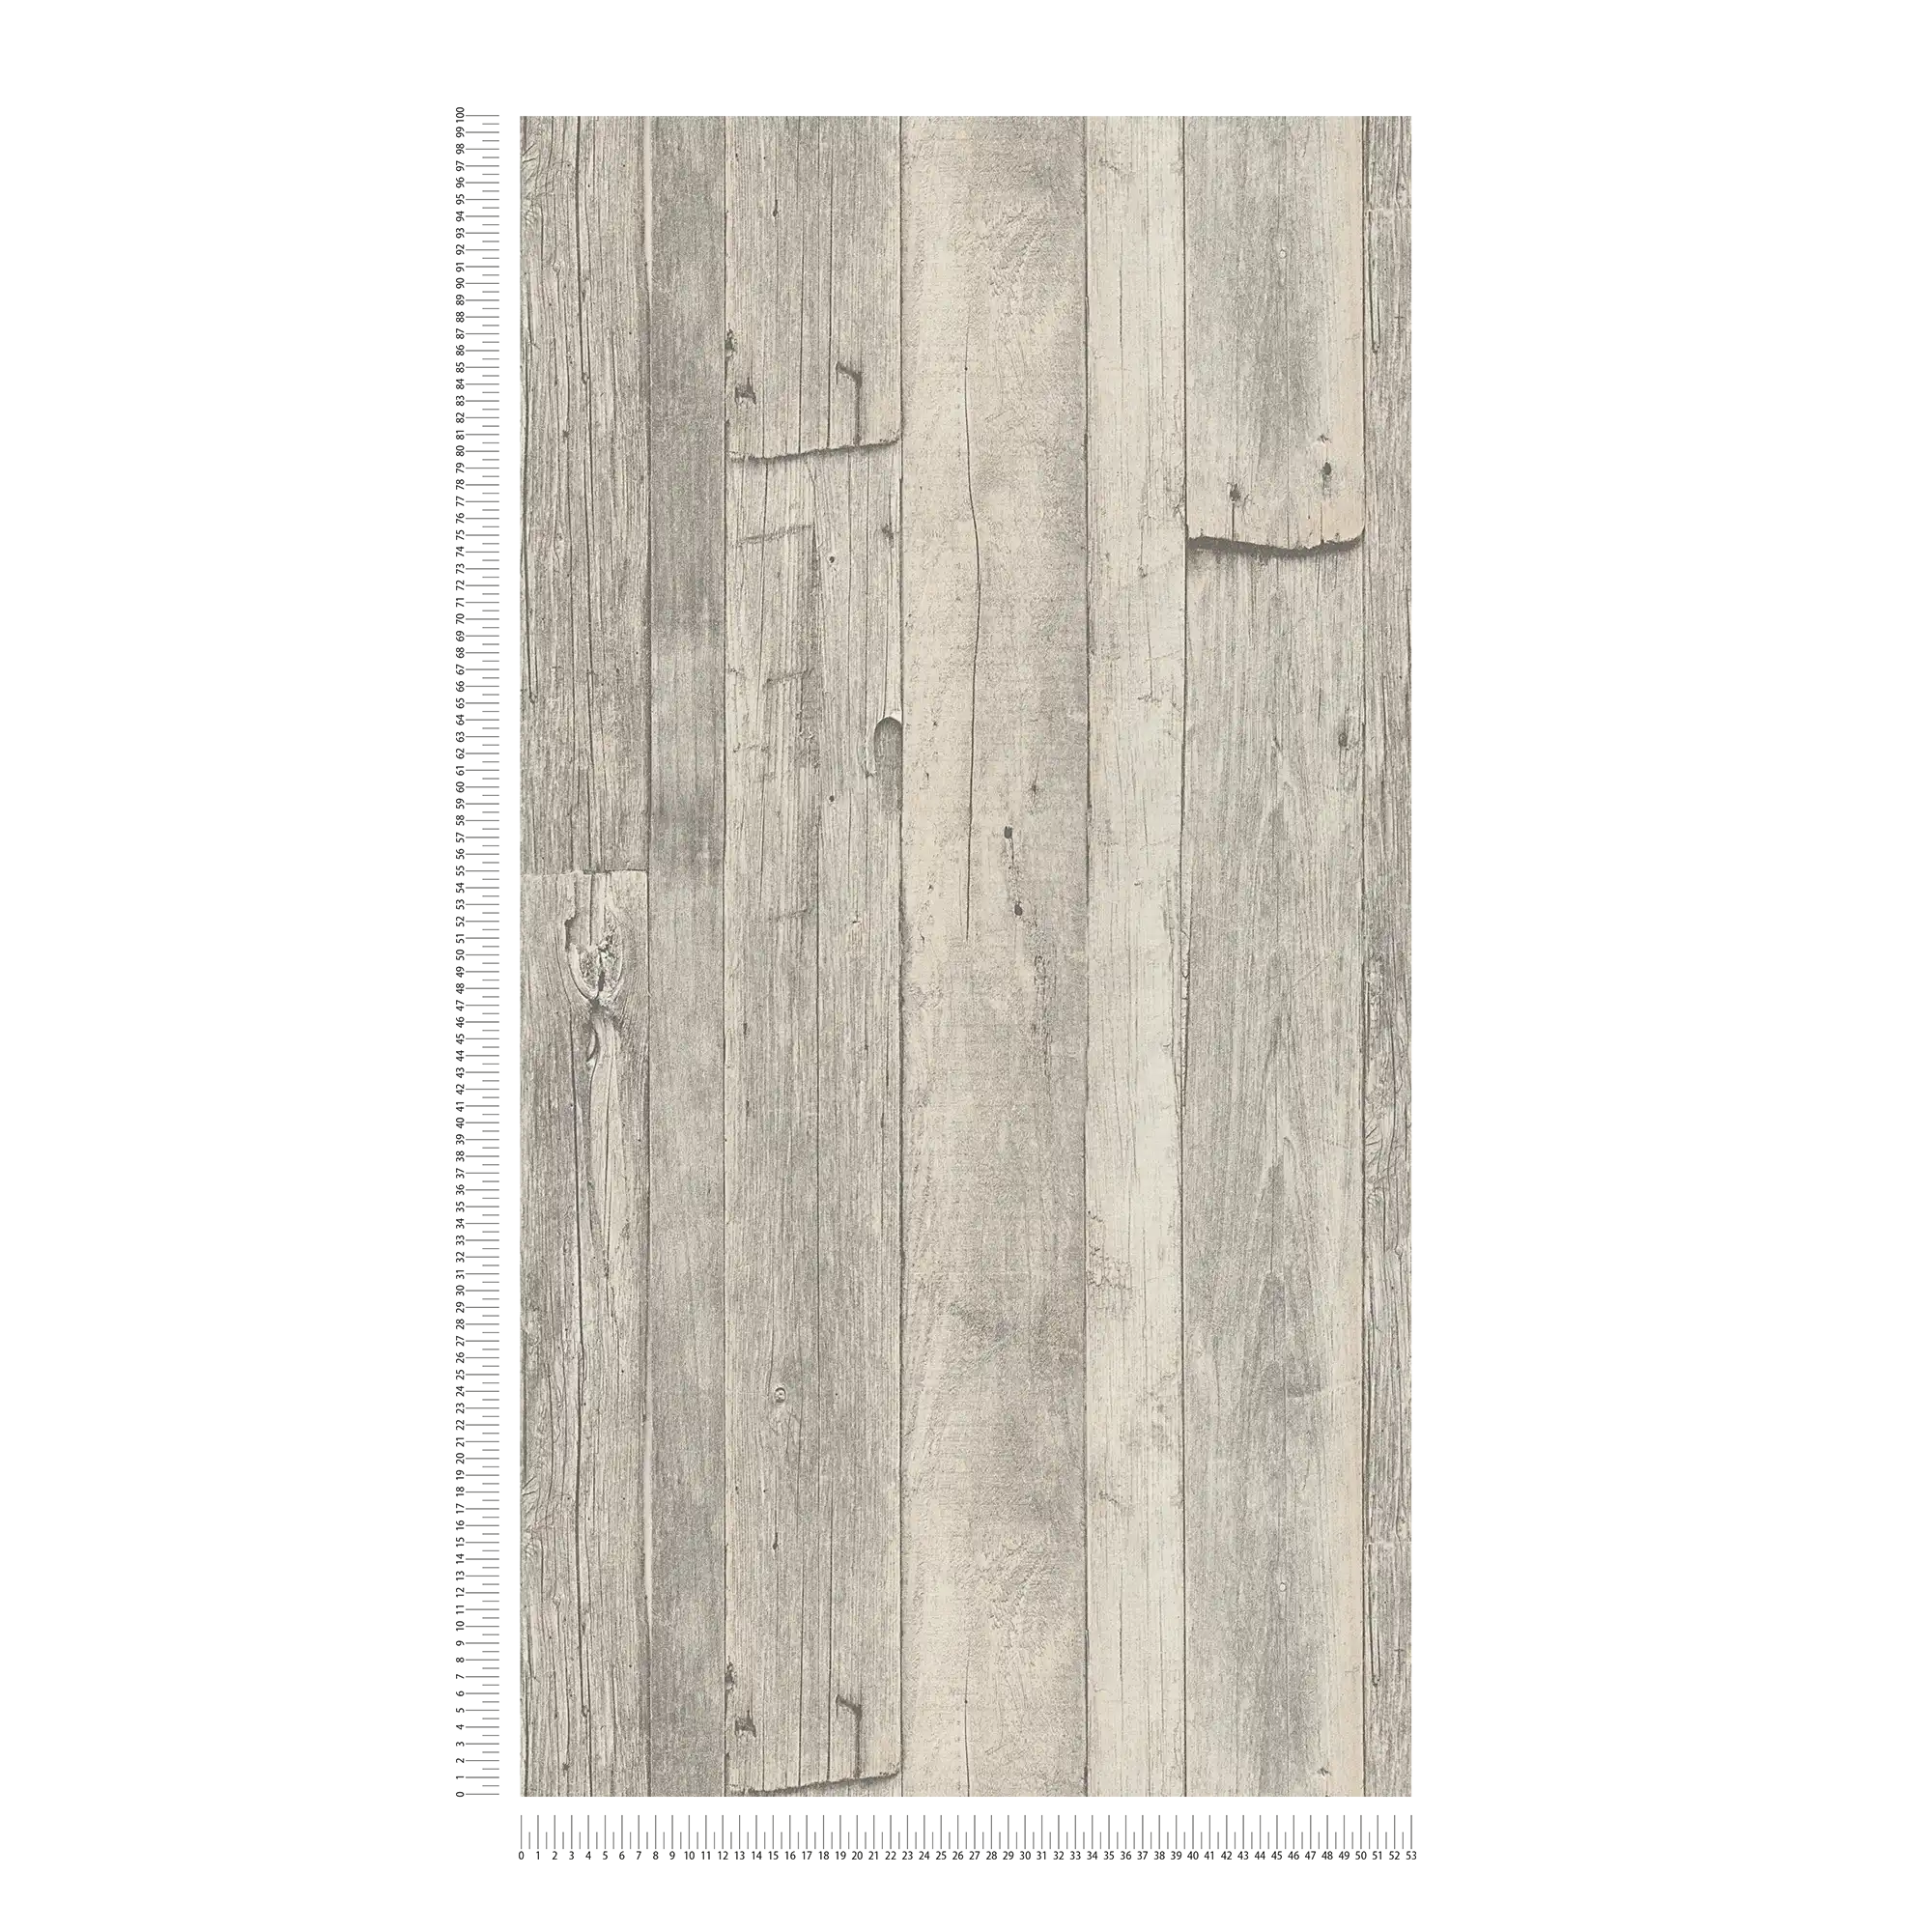             Papier peint bois avec planches & veines au design vintage - gris, beige, crème
        